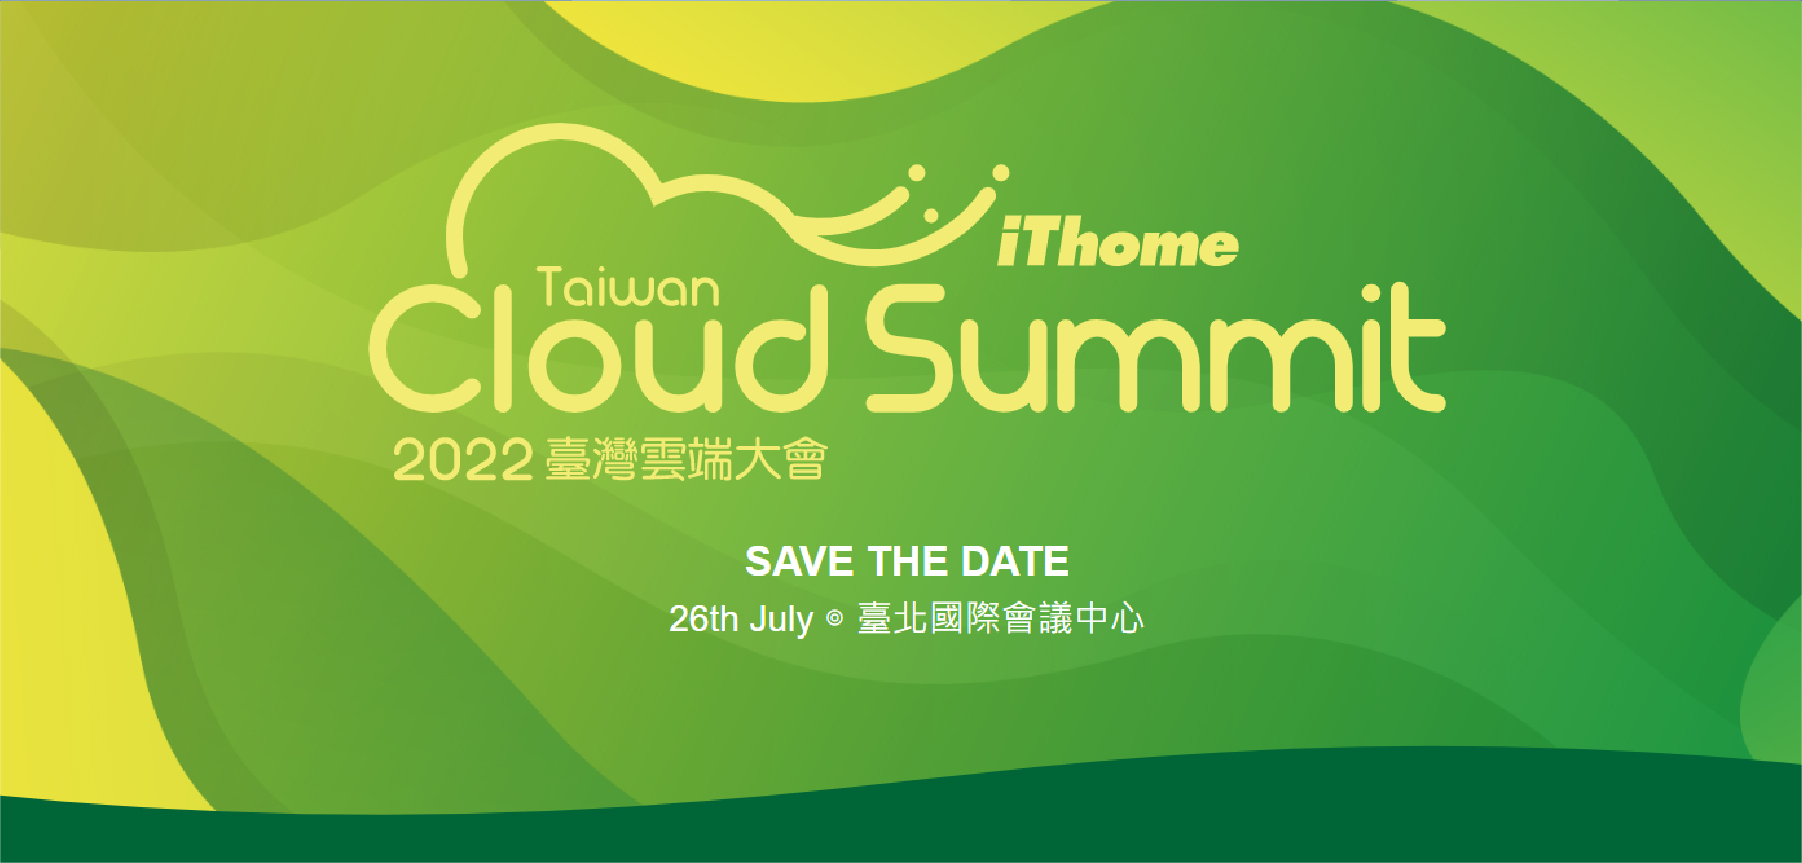 2022 Cloud Summit 雲端大會 : 雙子星一次展出三大雲原生管理解決方案